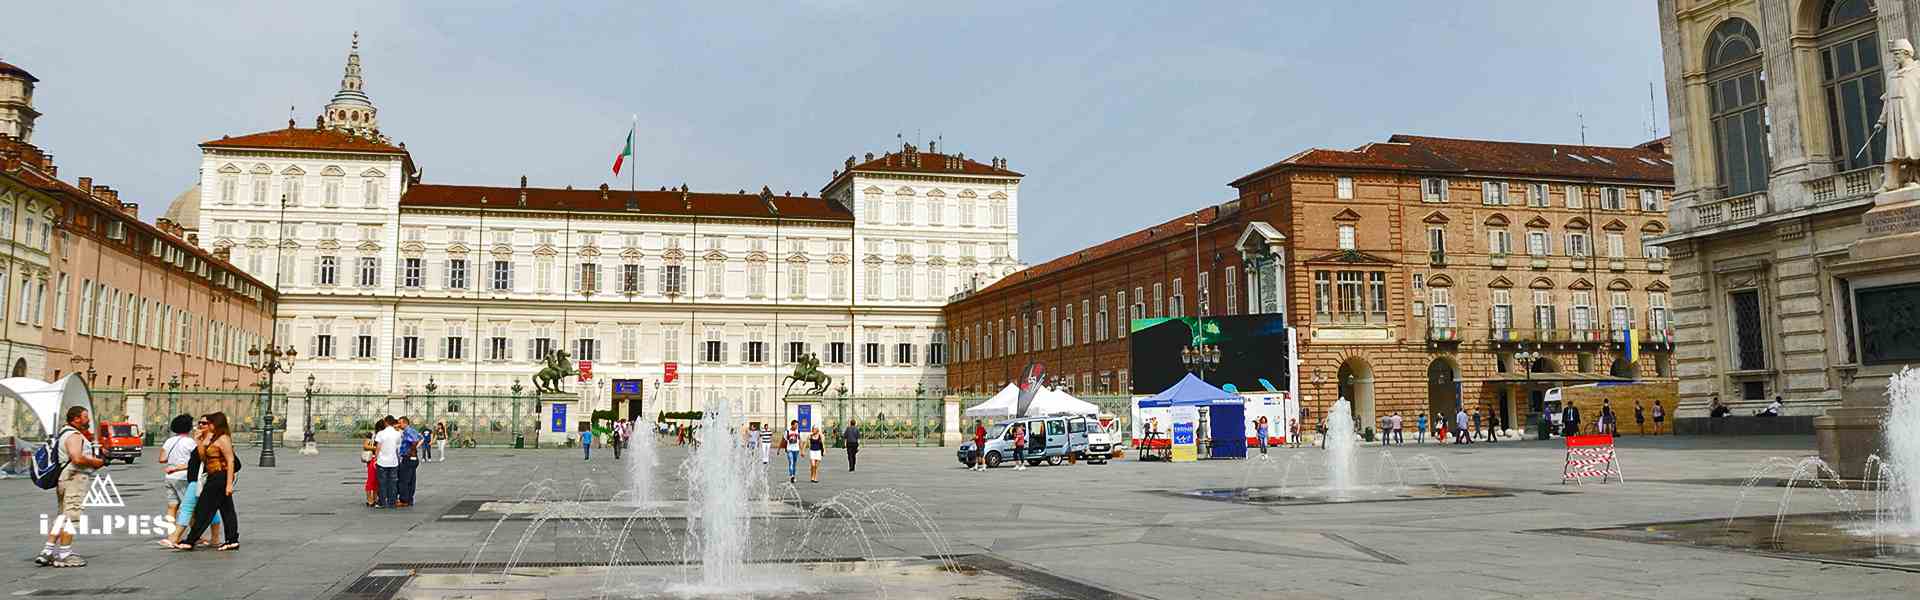 Palais Madame à Turin, Italie 